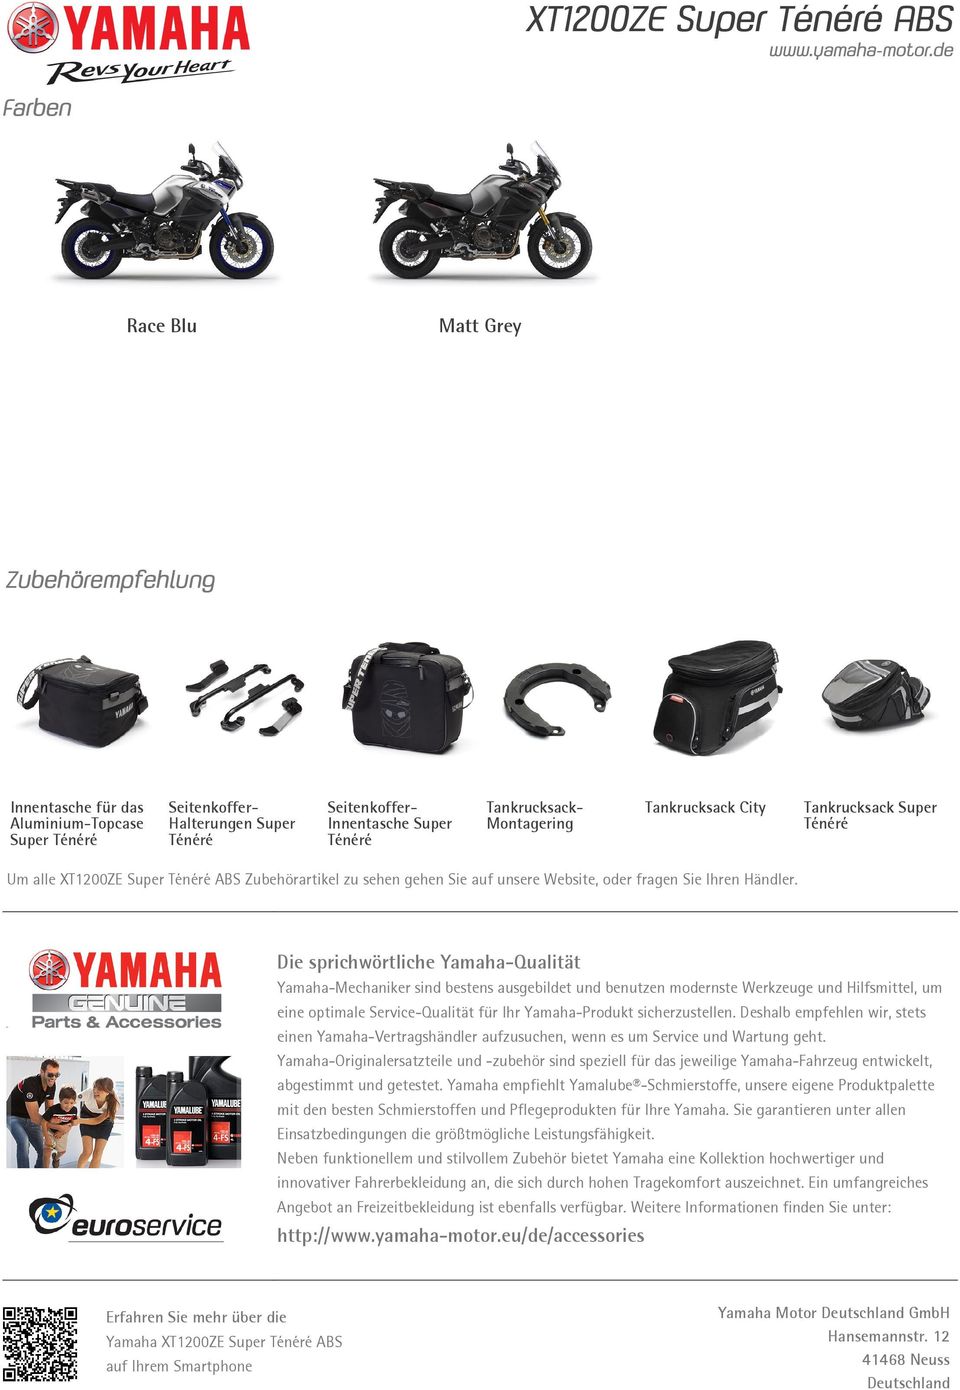 Die sprichwörtliche Yamaha-Qualität Yamaha-Mechaniker sind bestens ausgebildet und benutzen modernste Werkzeuge und Hilfsmittel, um eine optimale Service-Qualität für Ihr Yamaha-Produkt